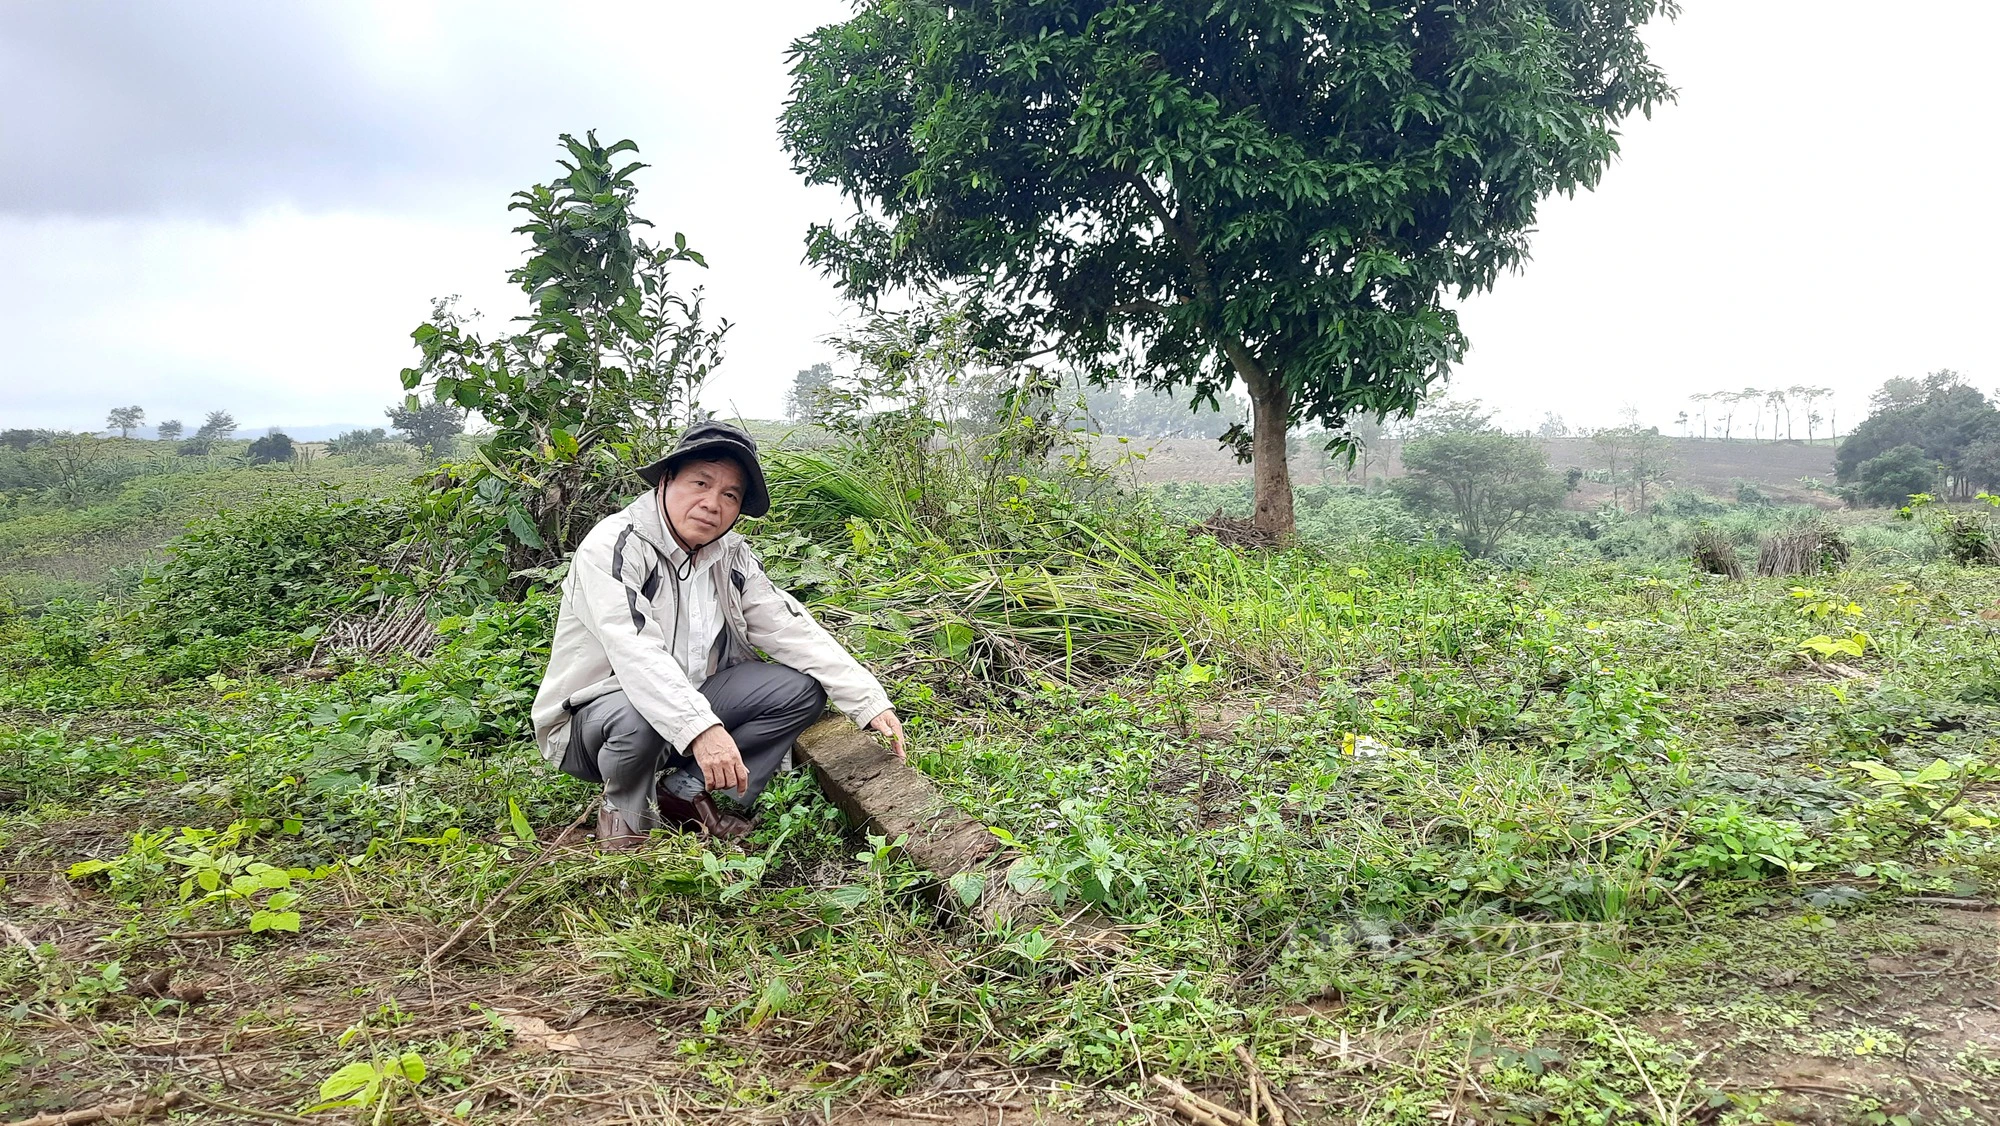 Vụ phá rừng chiếm 30ha đất ở Quảng Trị: Đại biểu Quốc hội lên tiếng - Ảnh 6.